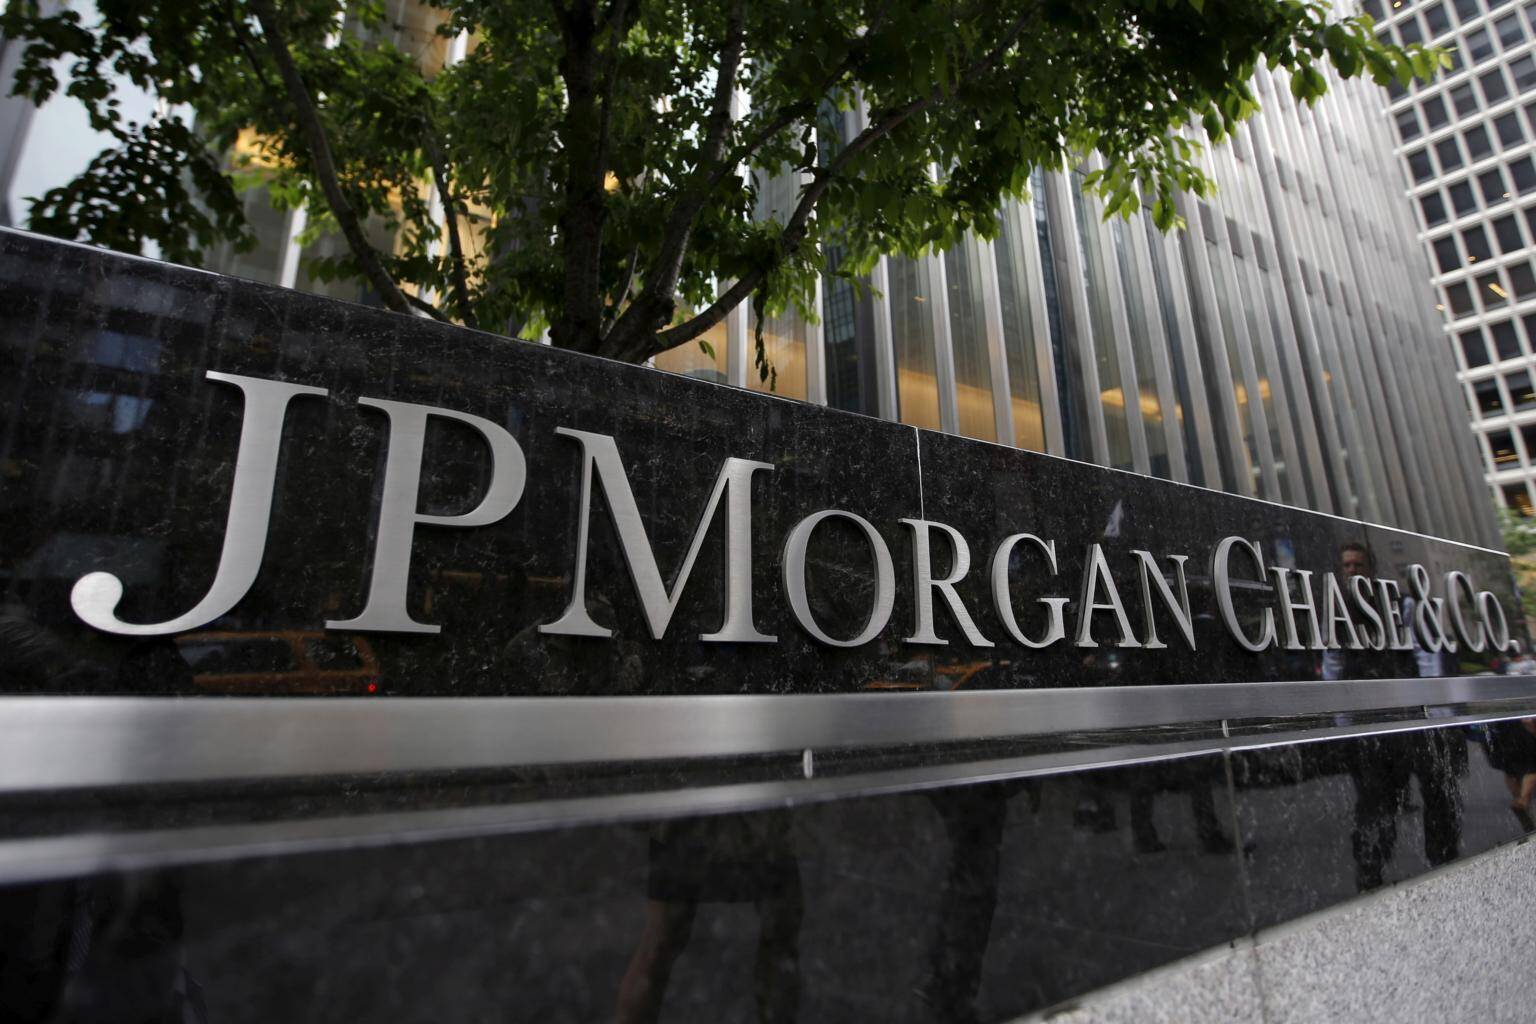 JPMorgan: Cuộc khủng hoảng Ukraine sẽ ảnh hưởng gì đối với giá hàng hóa ?